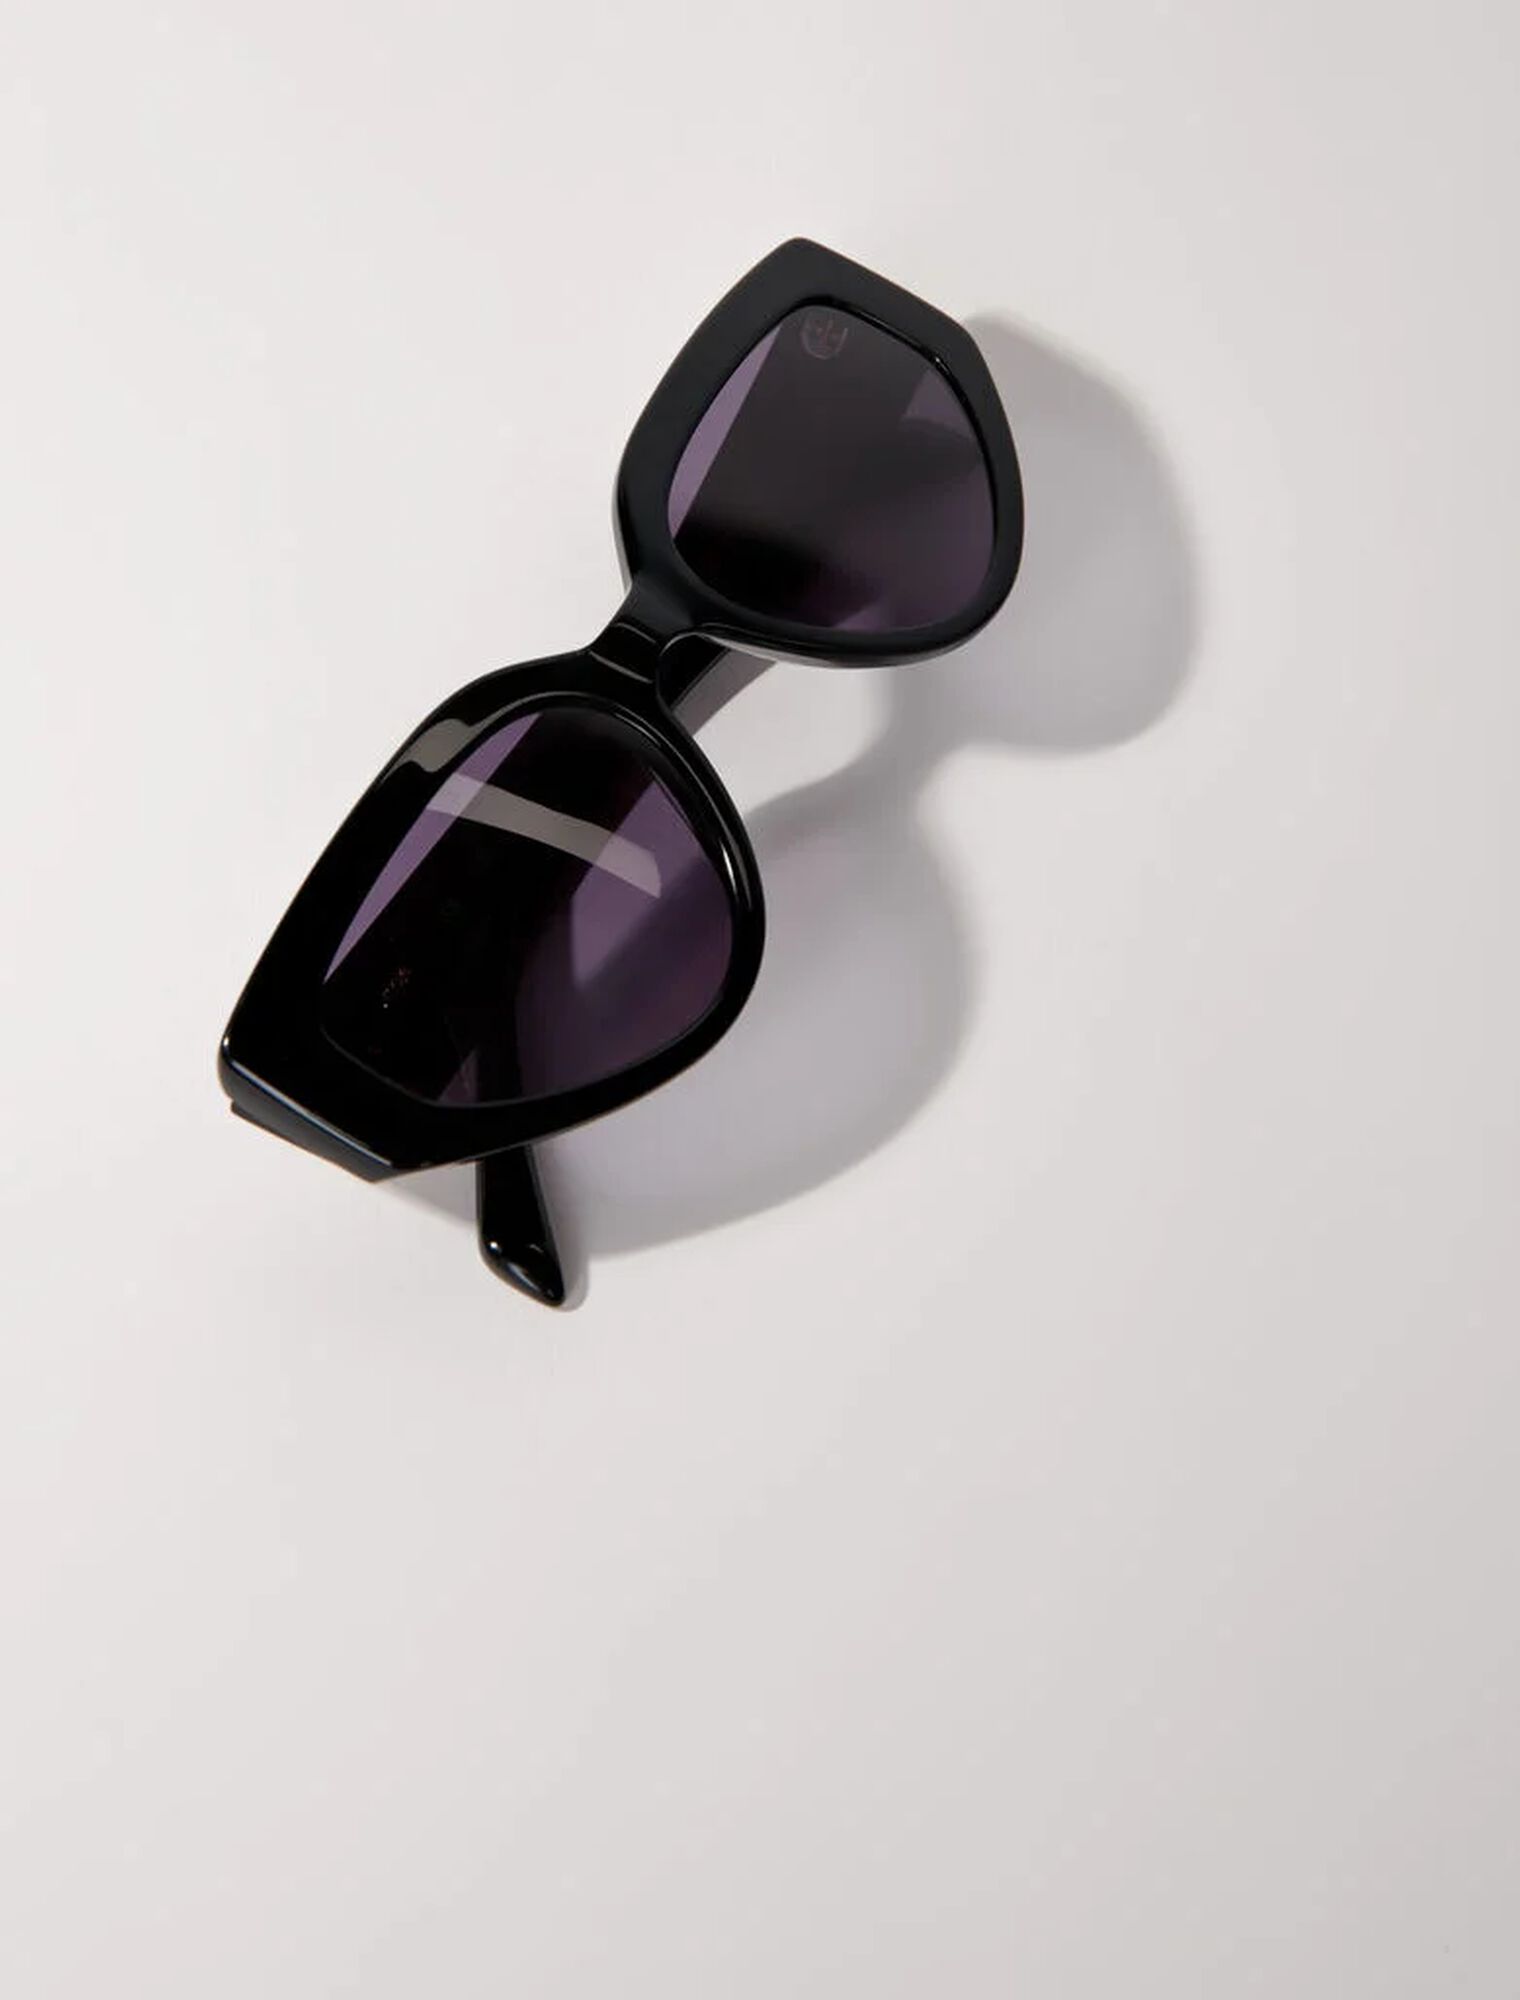 Sunglasses - Sunglasses | Maje